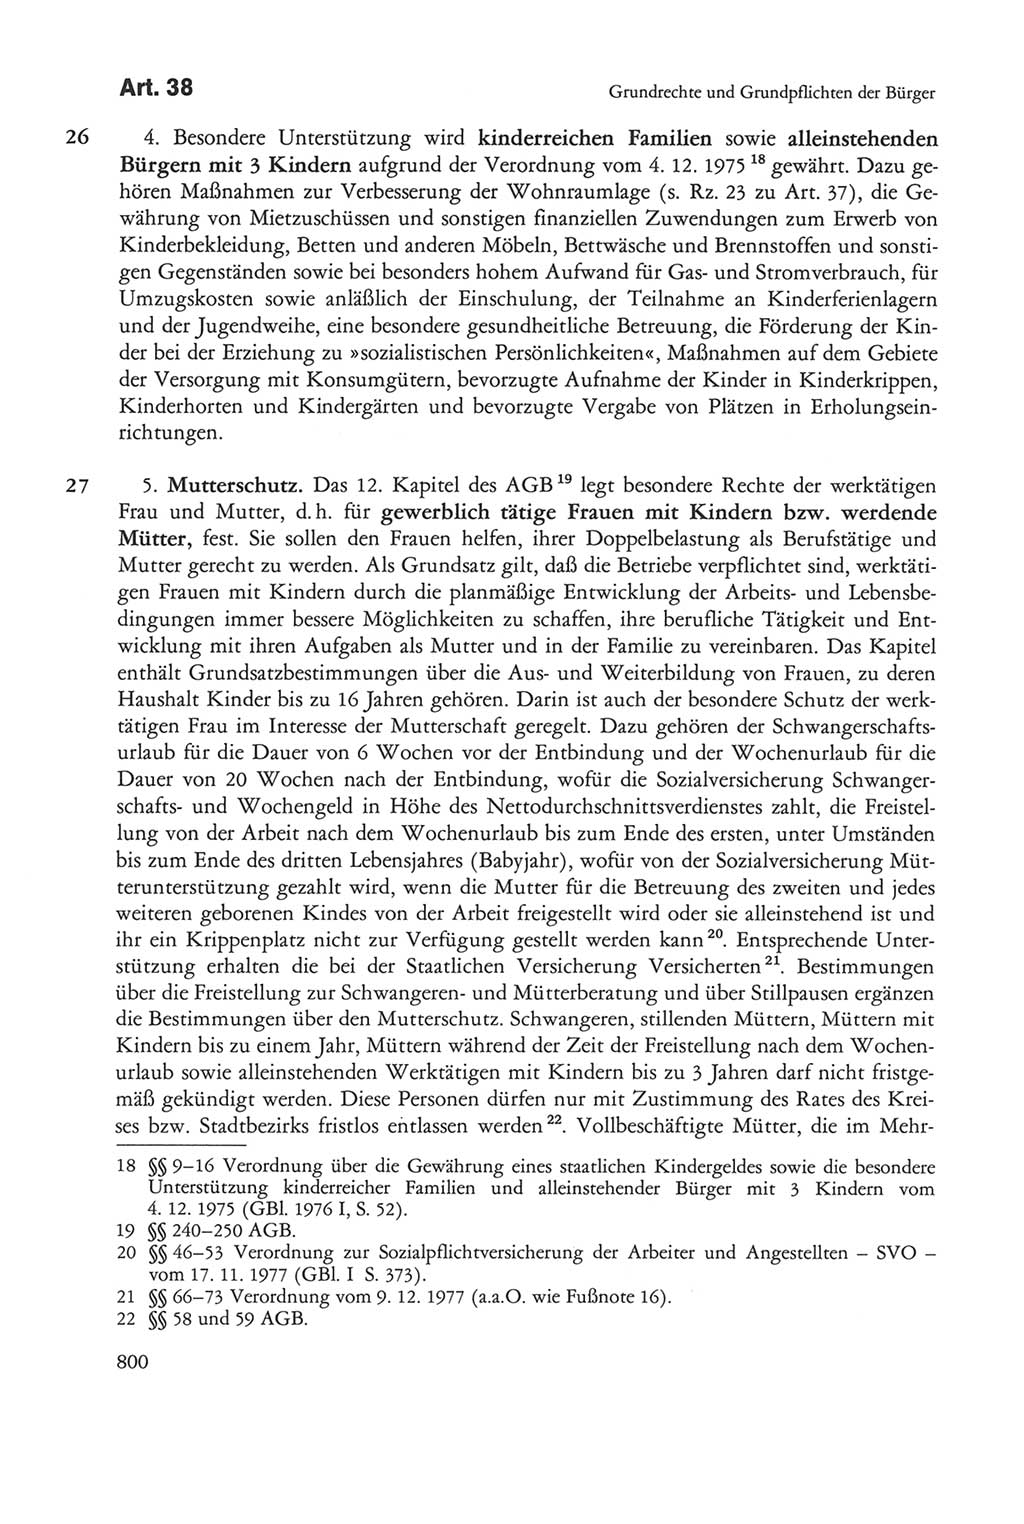 Die sozialistische Verfassung der Deutschen Demokratischen Republik (DDR), Kommentar 1982, Seite 800 (Soz. Verf. DDR Komm. 1982, S. 800)